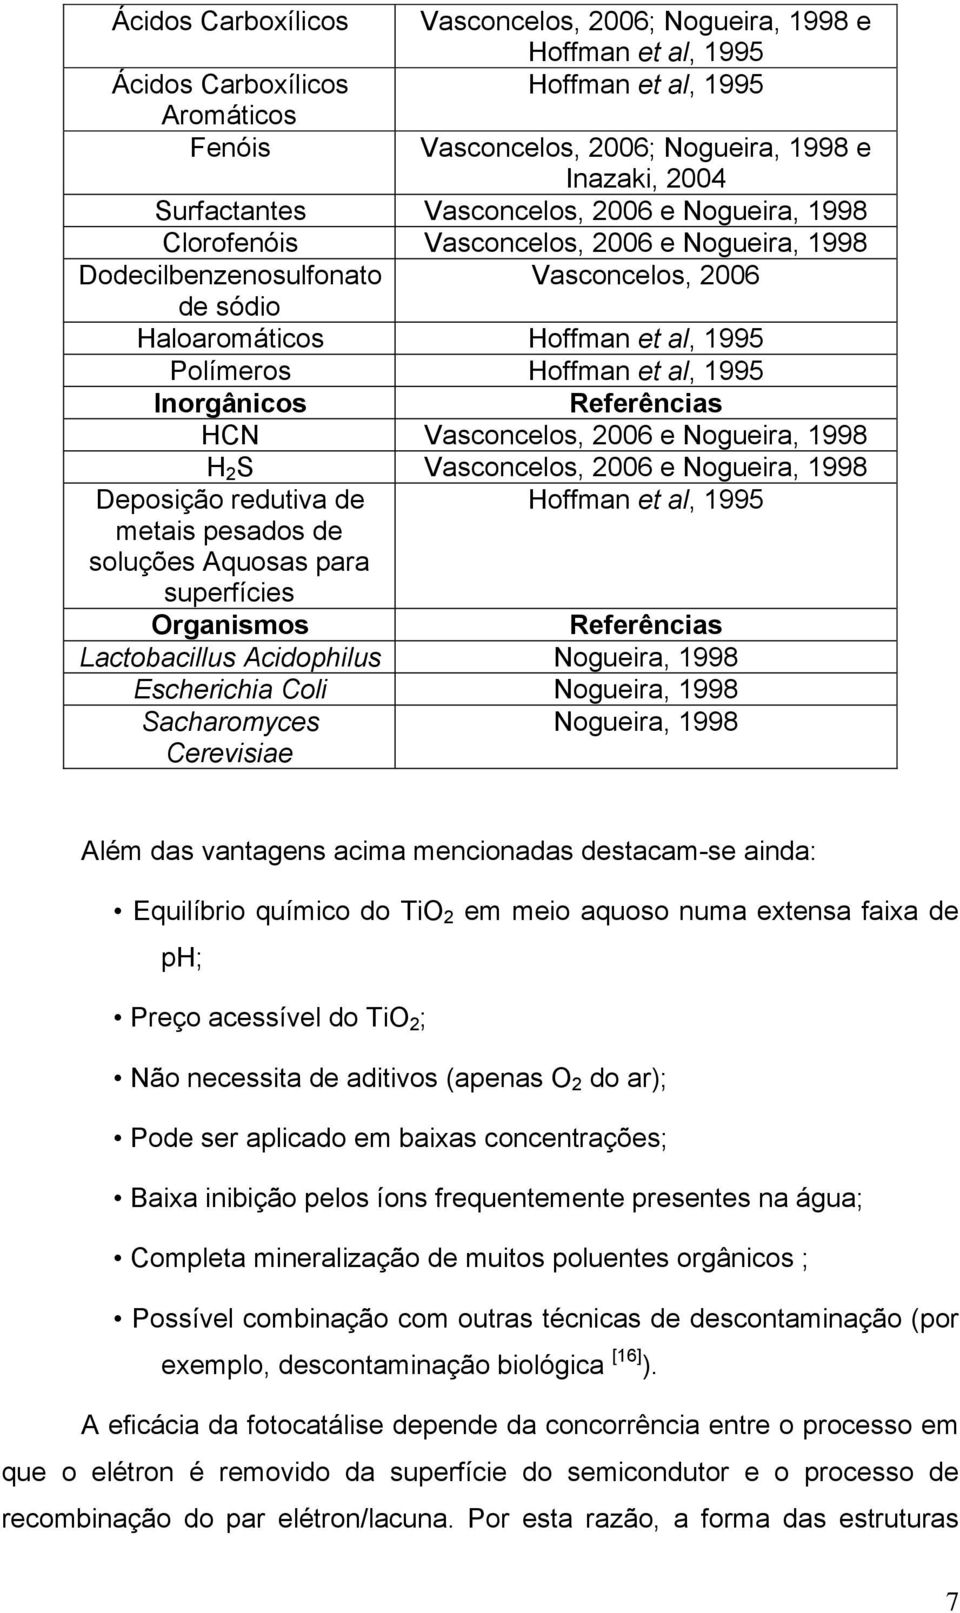 Inorgânicos Referências HCN Vasconcelos, 2006 e Nogueira, 1998 H 2 S Vasconcelos, 2006 e Nogueira, 1998 Deposição redutiva de Hoffman et al, 1995 metais pesados de soluções Aquosas para superfícies